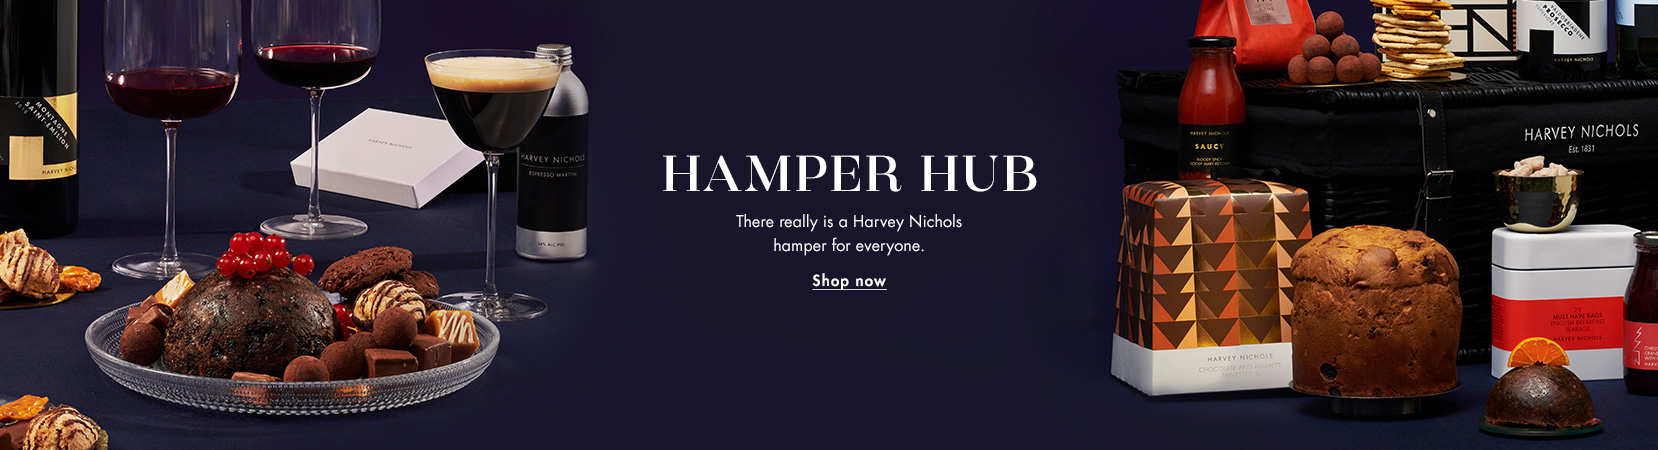 CLP - HAMPER HUB - Hero Banner - Desktop